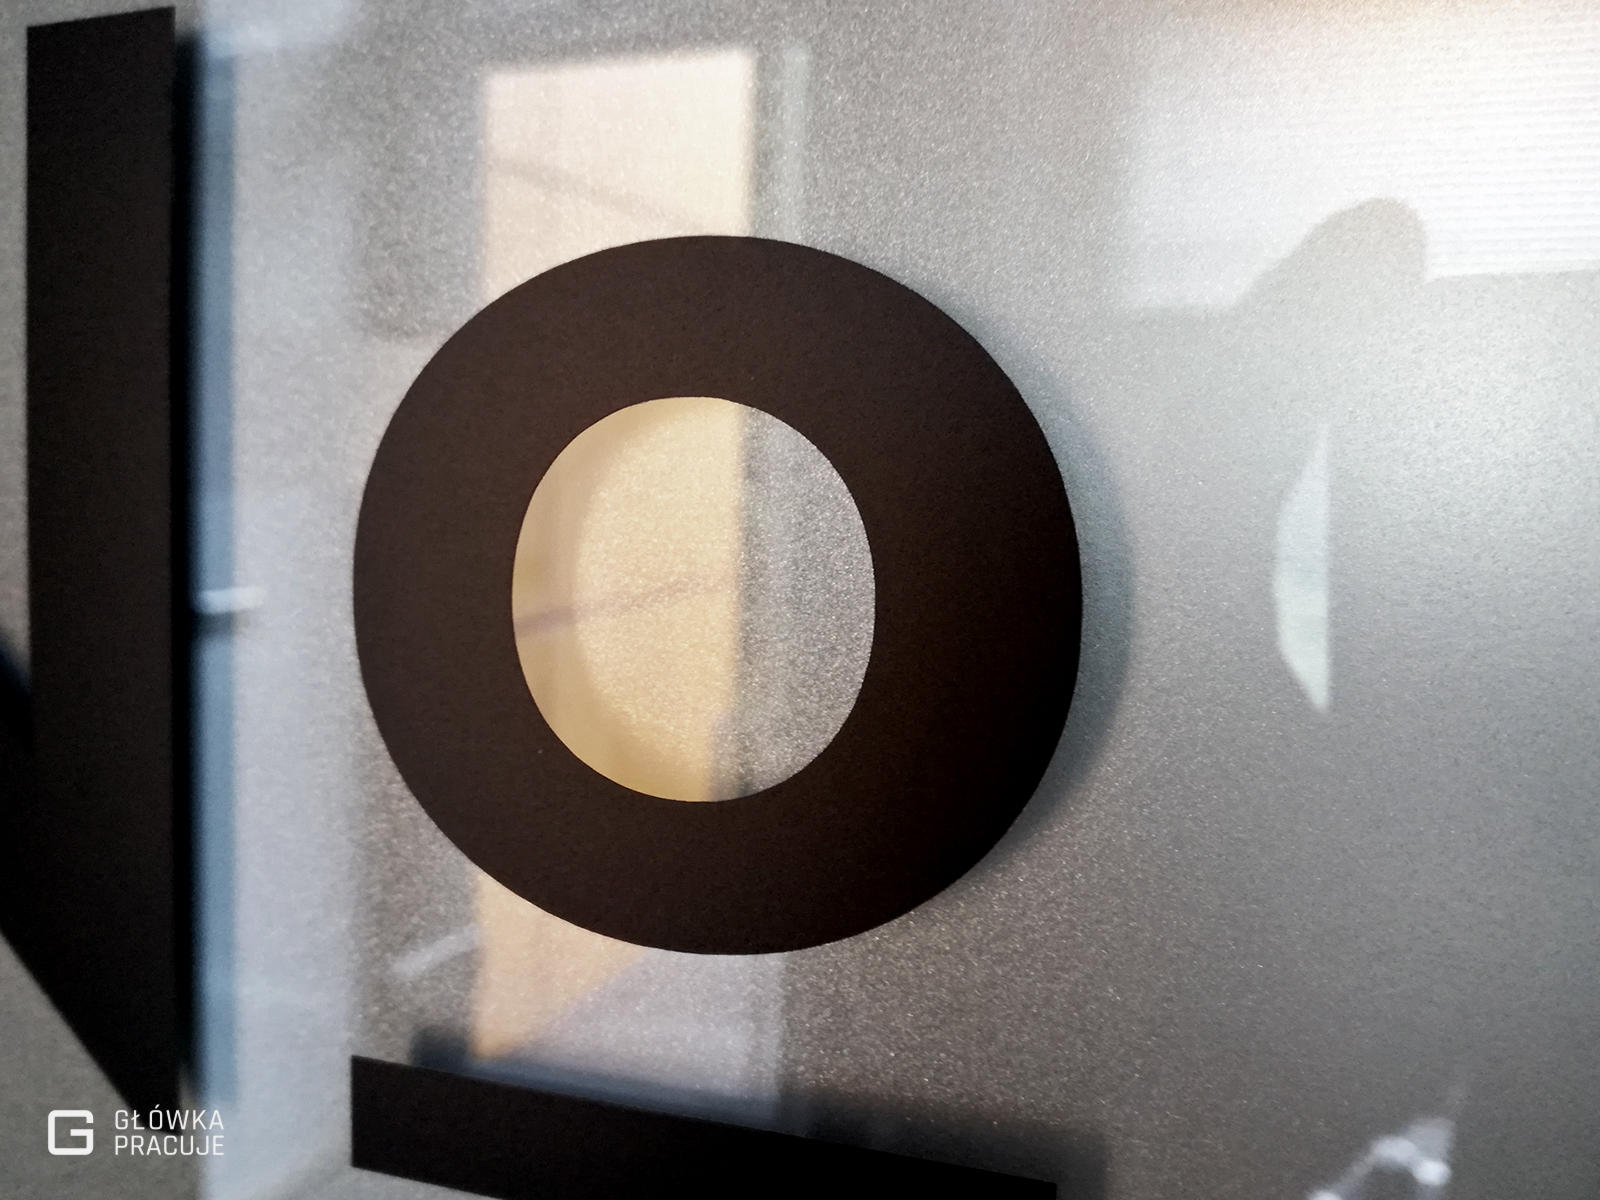 Główka Pracuje pl Number Coffee logotyp wycięty z czarnej folii naklejony na szklane drzwi z matową folią